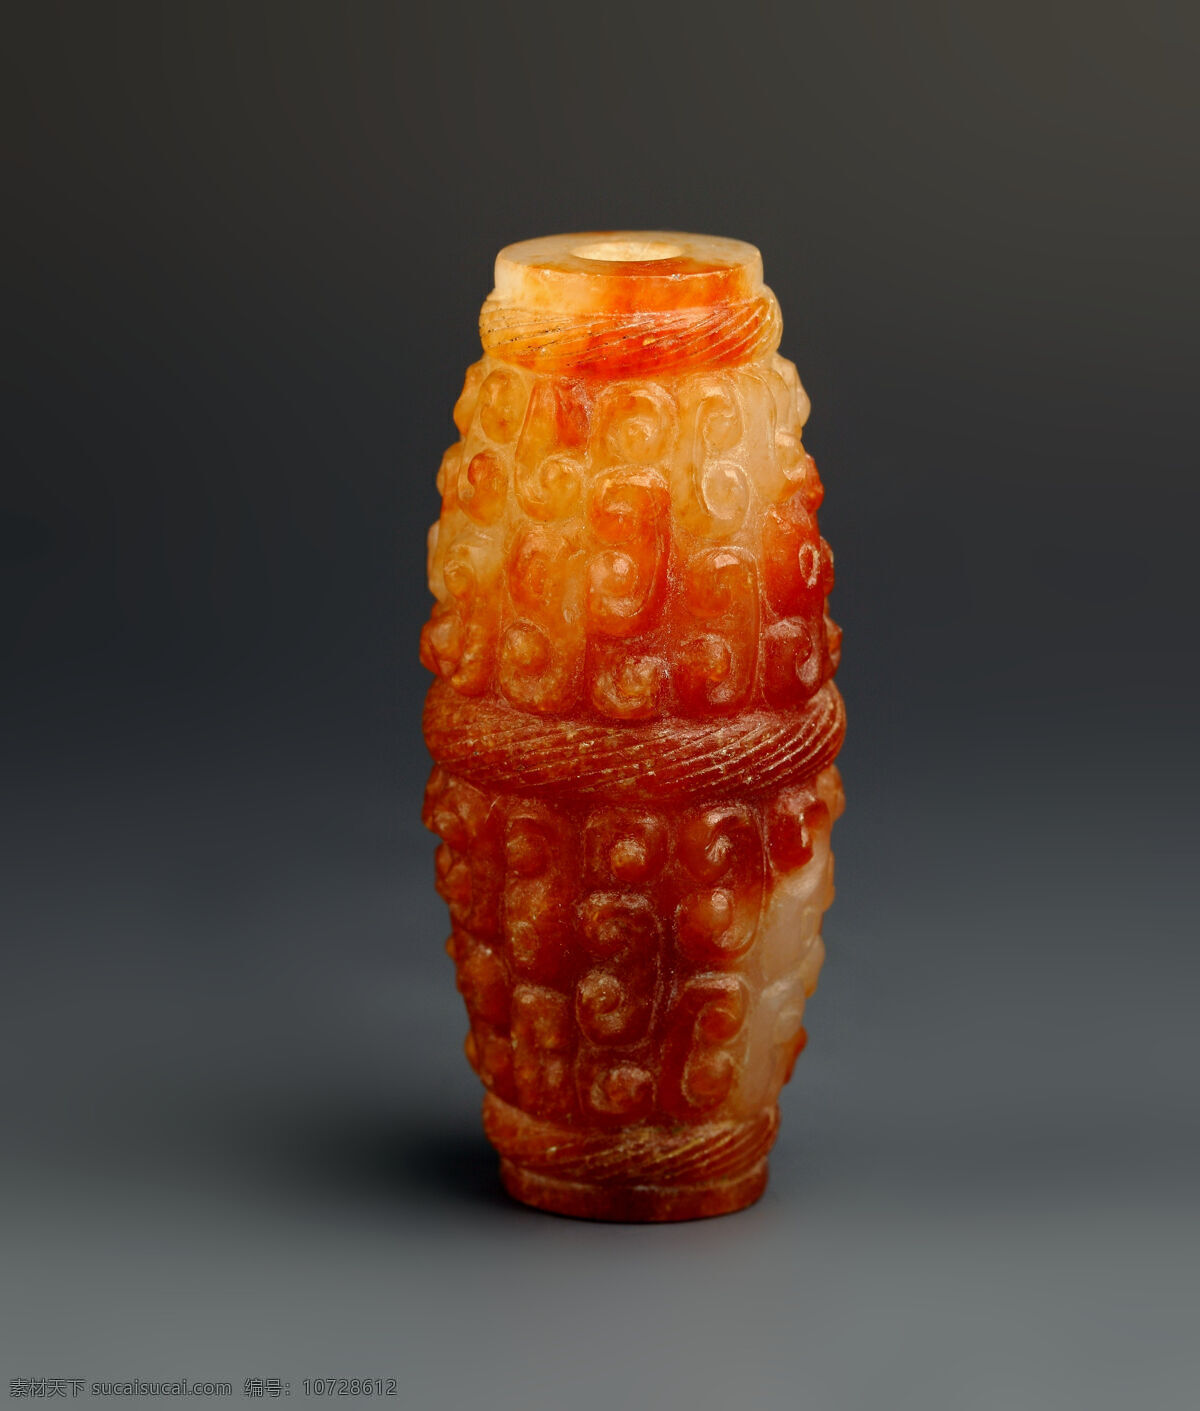 玉器 乳钉纹勒子 玉 古董 收藏 玉石 石雕 玉雕 白玉 奇石 艺术 文化 传统文化 文化艺术